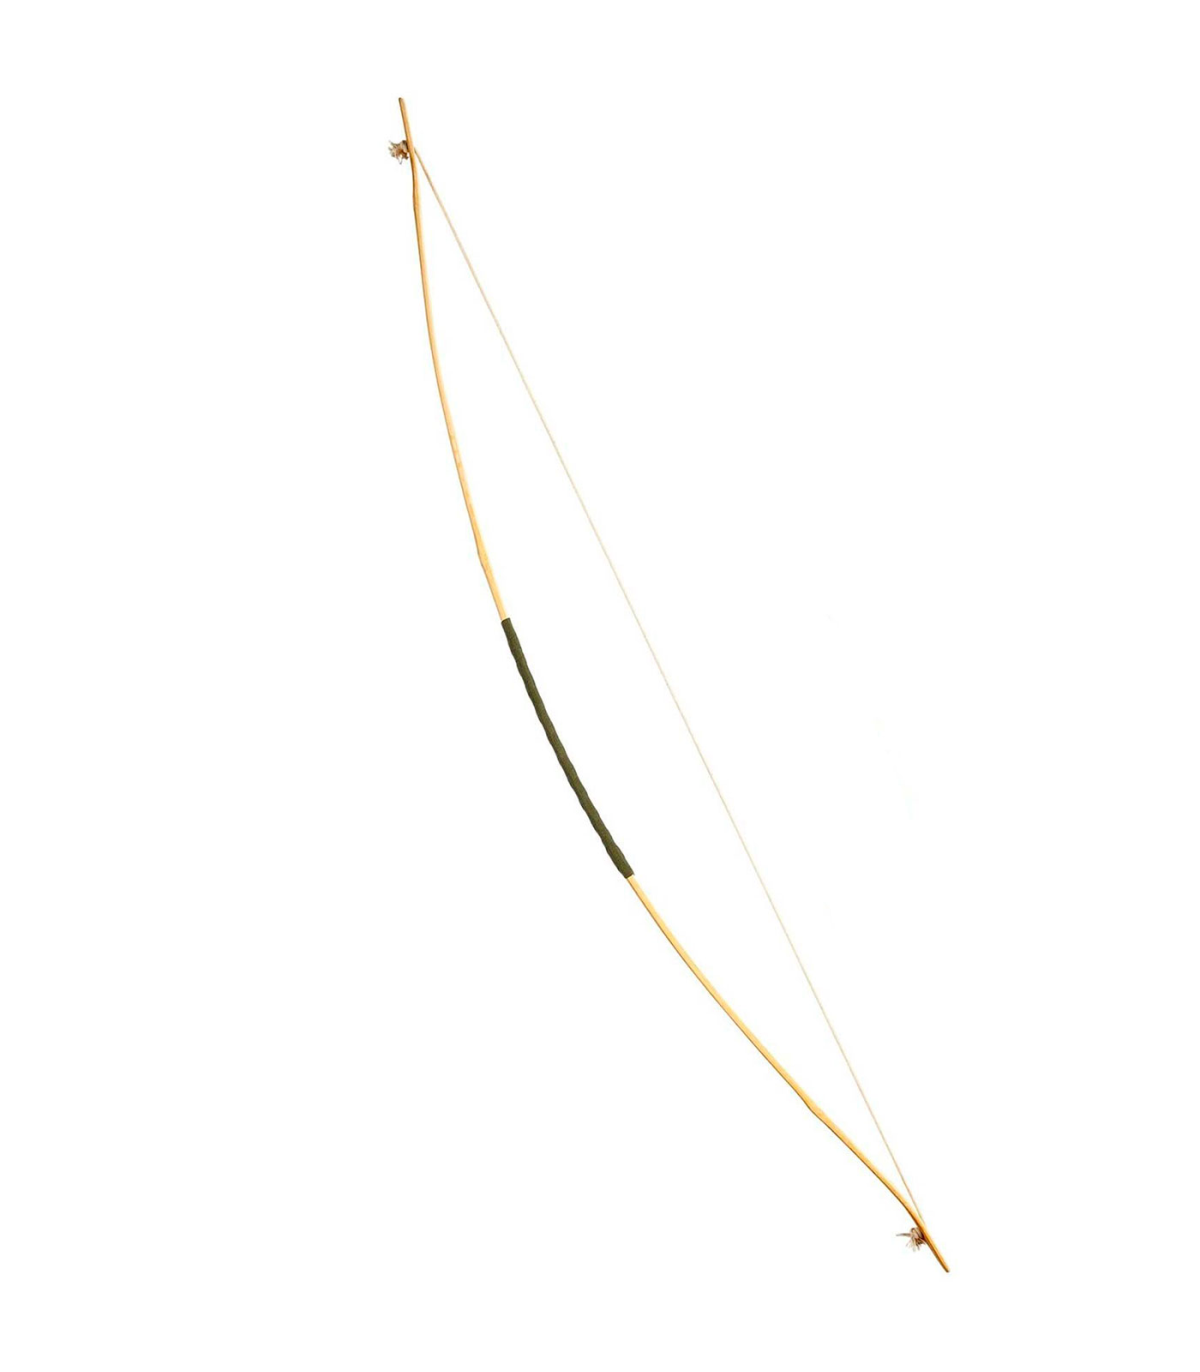 Tradineur - Arco con flechas de 104 cm, arco de madera con cuerda